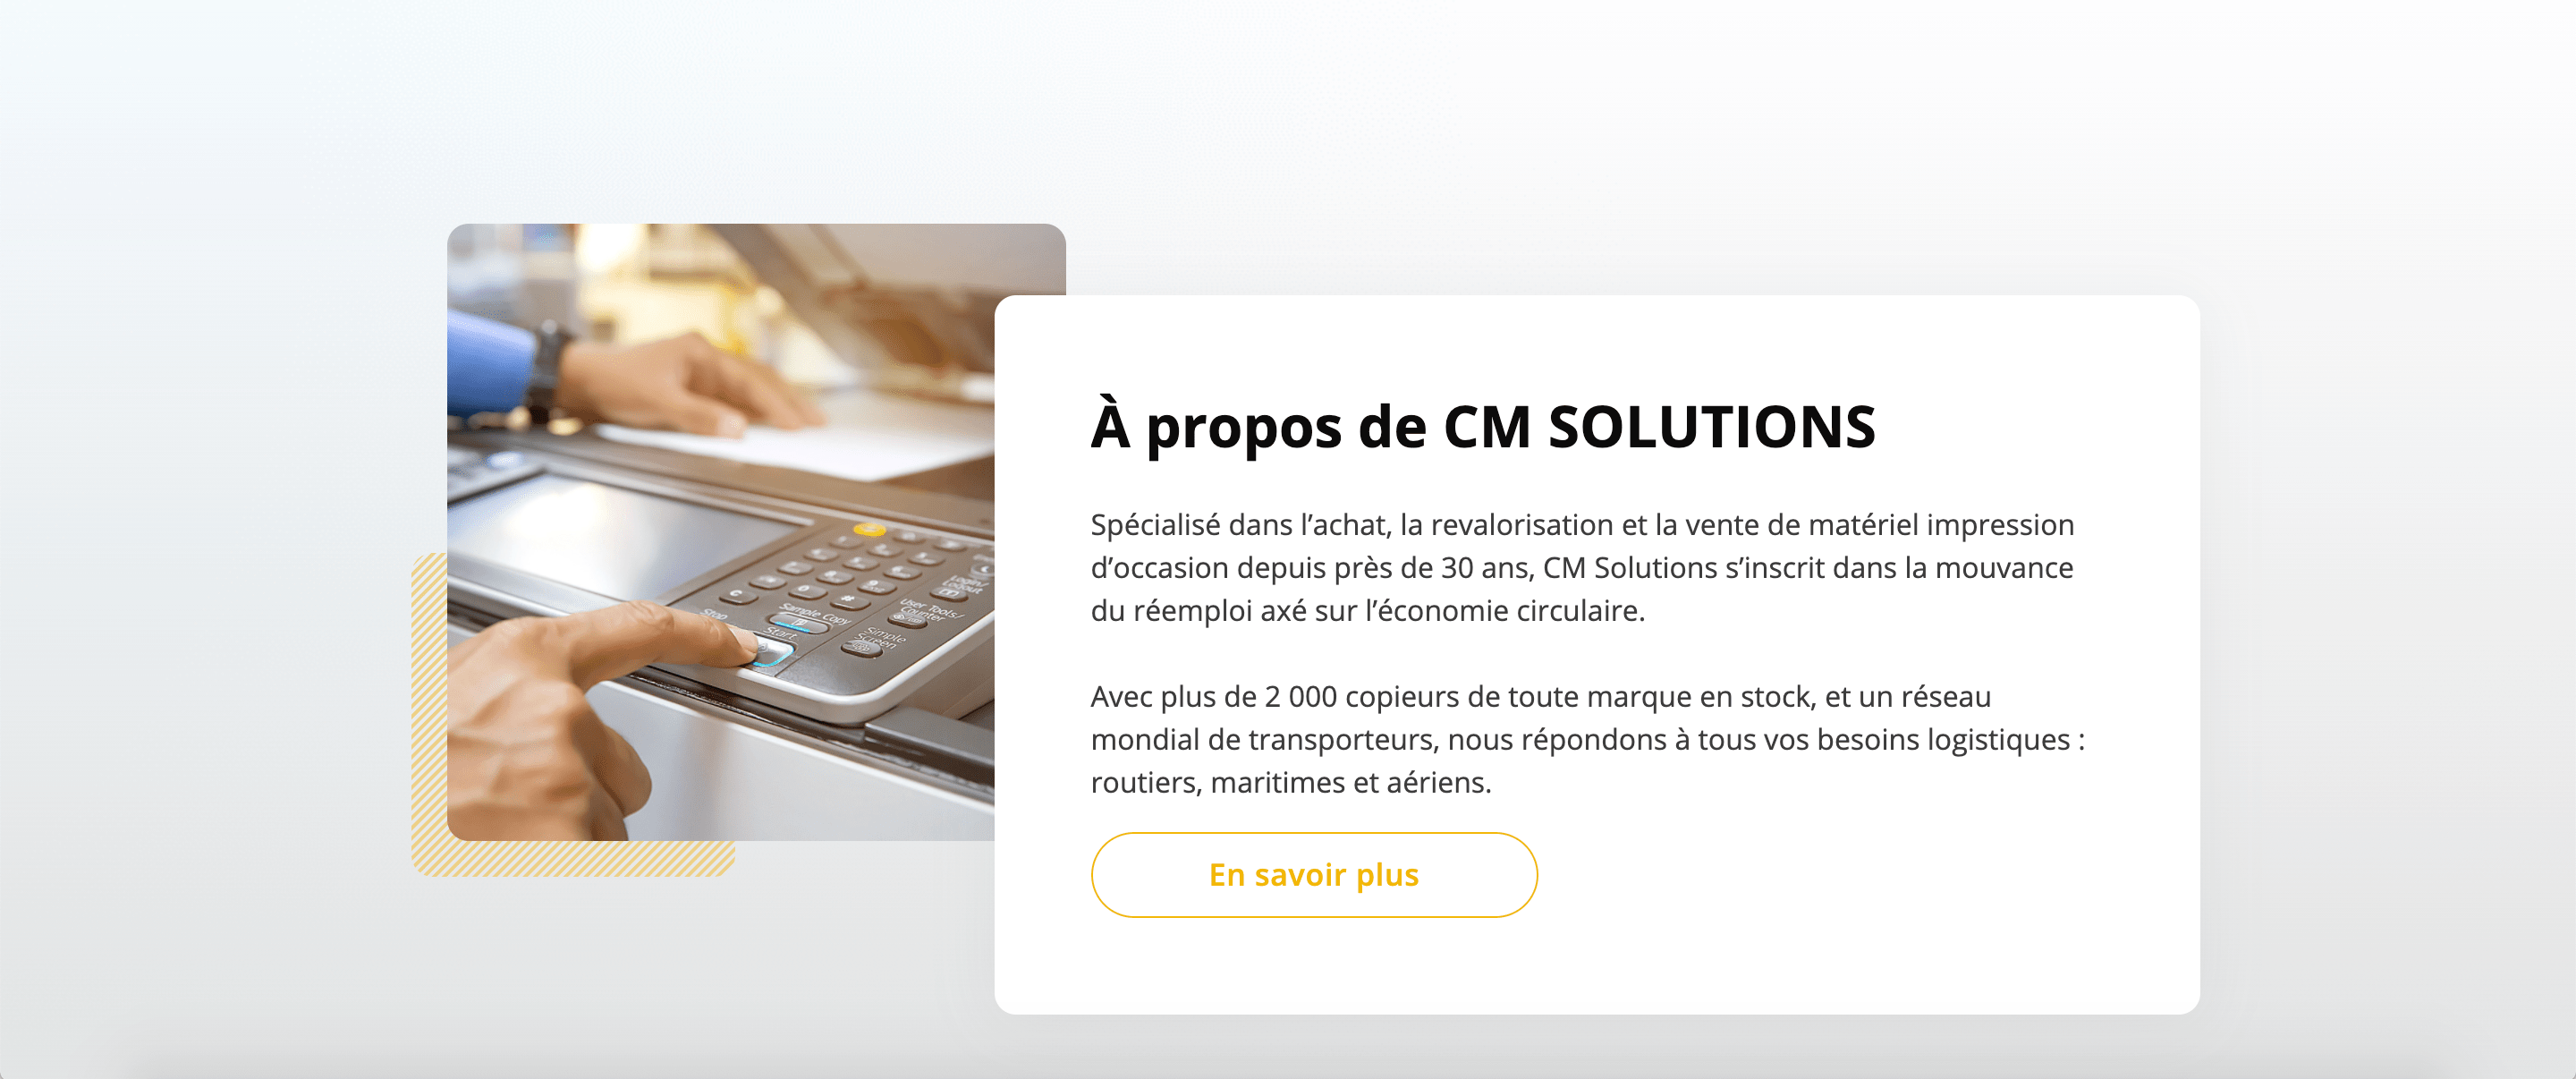 Refonte d'un site vitrine pour CM Solutions